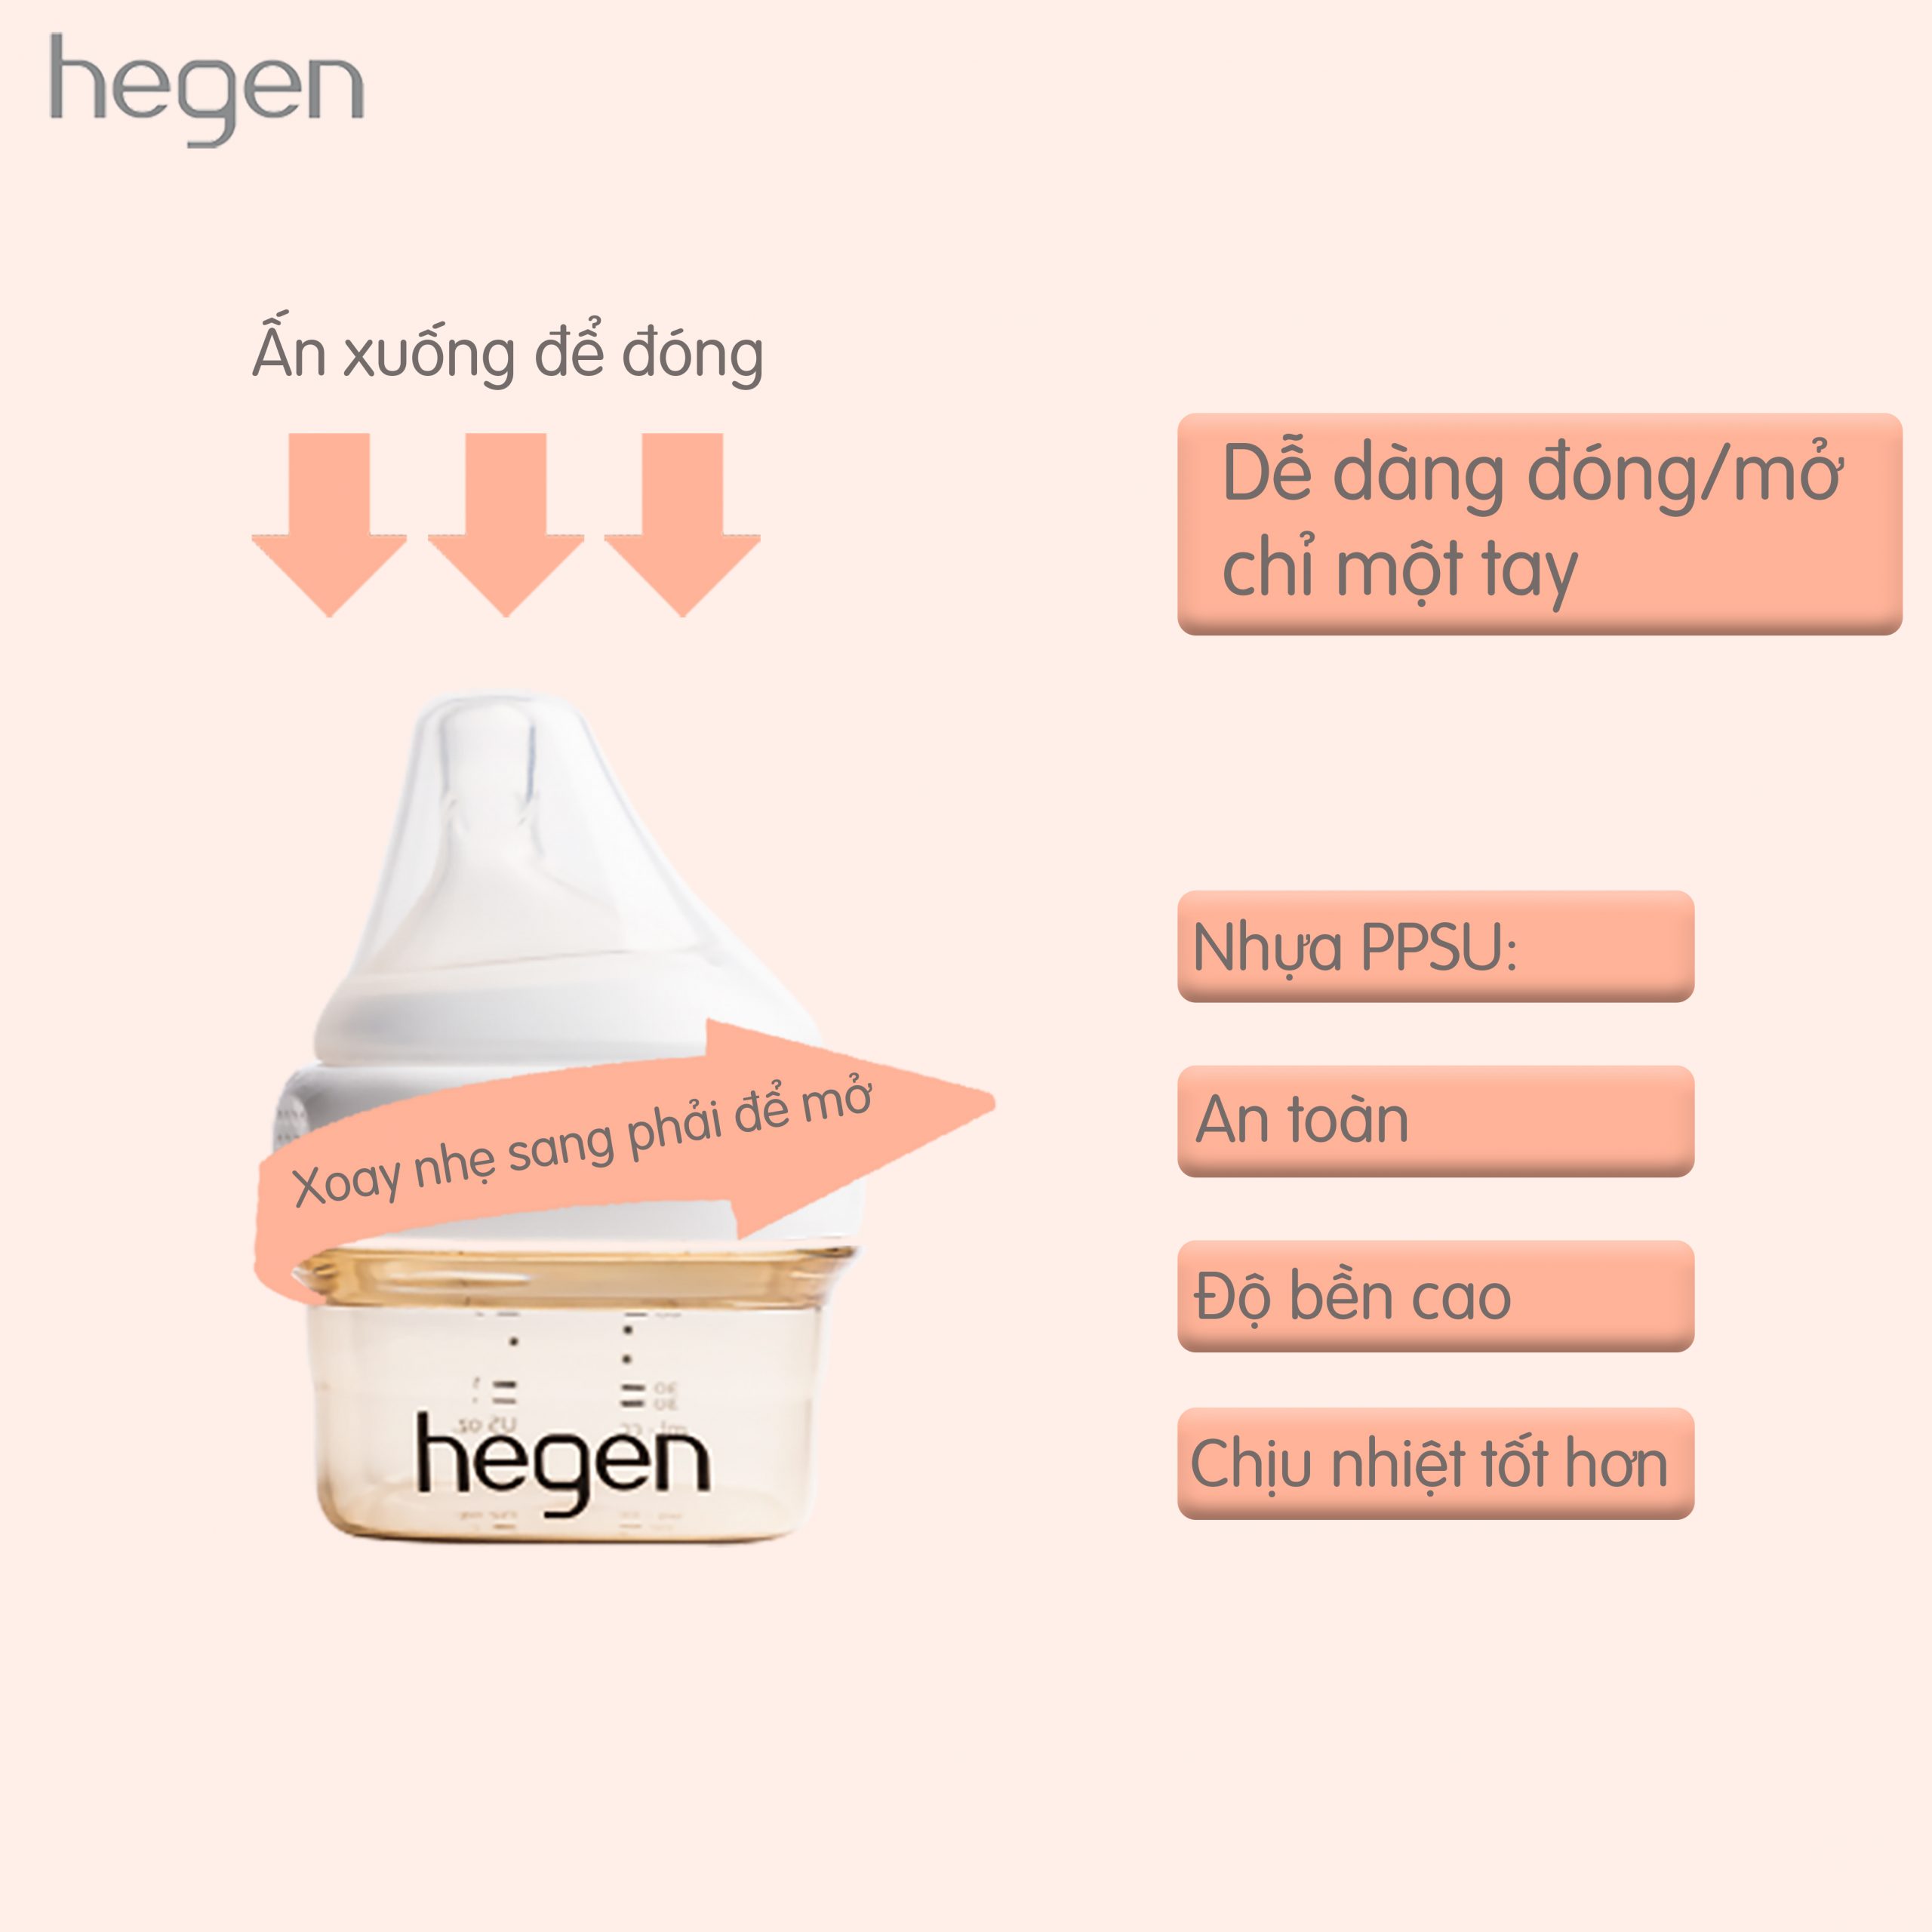 Bộ 2 Núm ti Hegen size M từ 3 – 6 tháng tuổi:5590